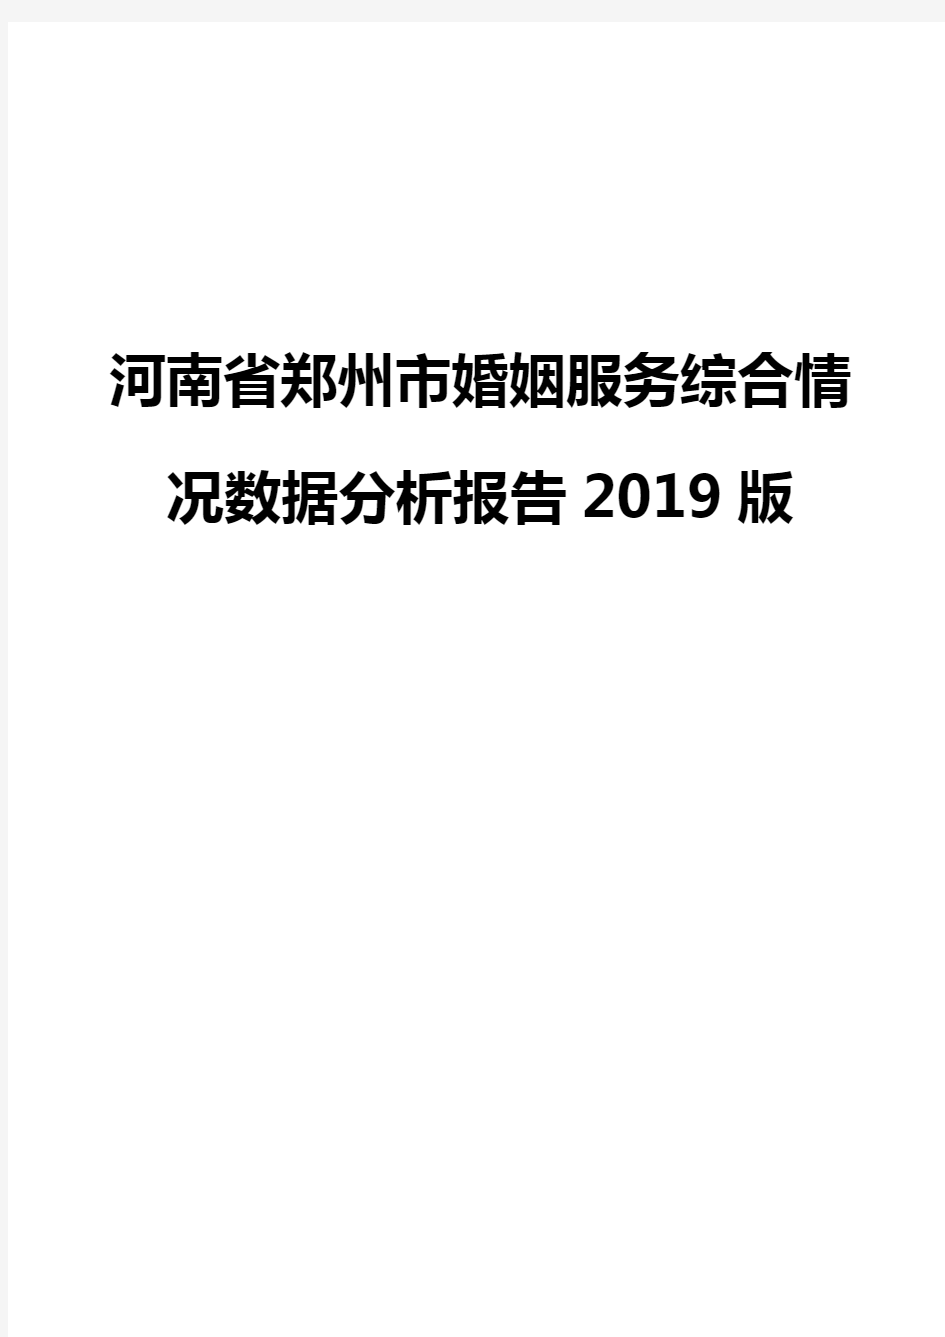 河南省郑州市婚姻服务综合情况数据分析报告2019版